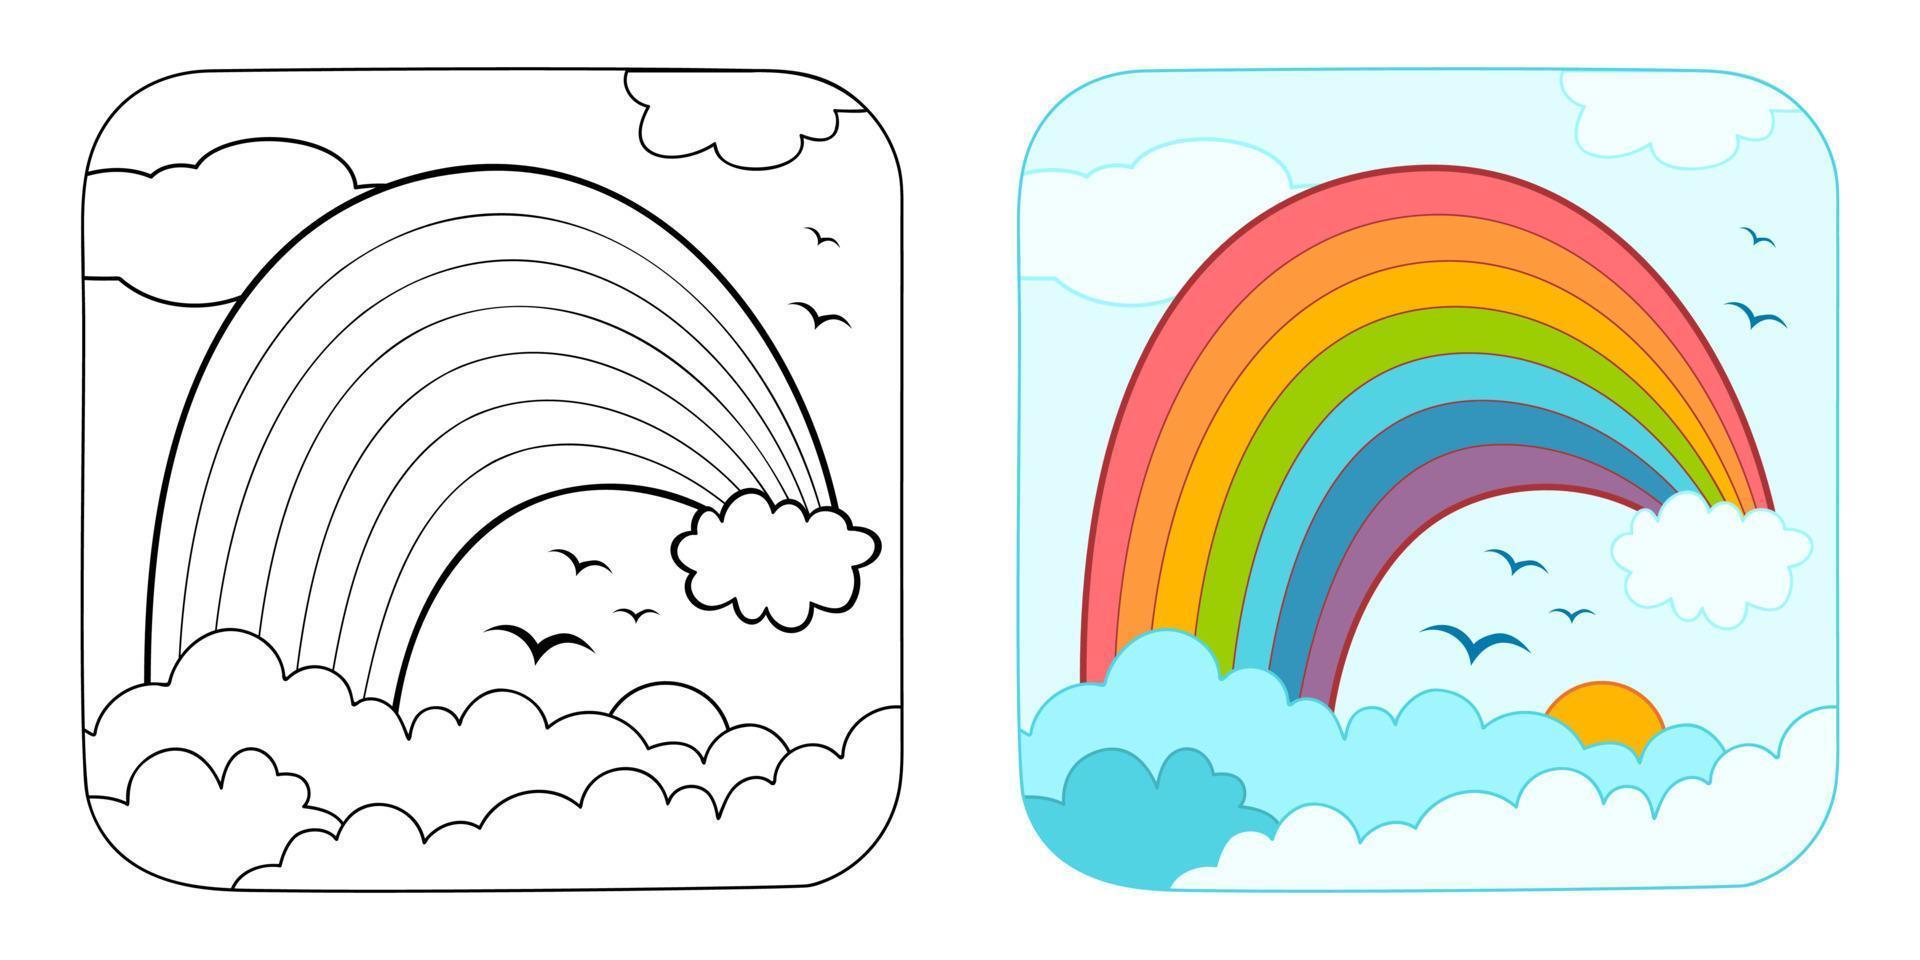 kleurboek of kleurplaat voor kinderen. regenboog vector illustratie clipart. natuur achtergrond.